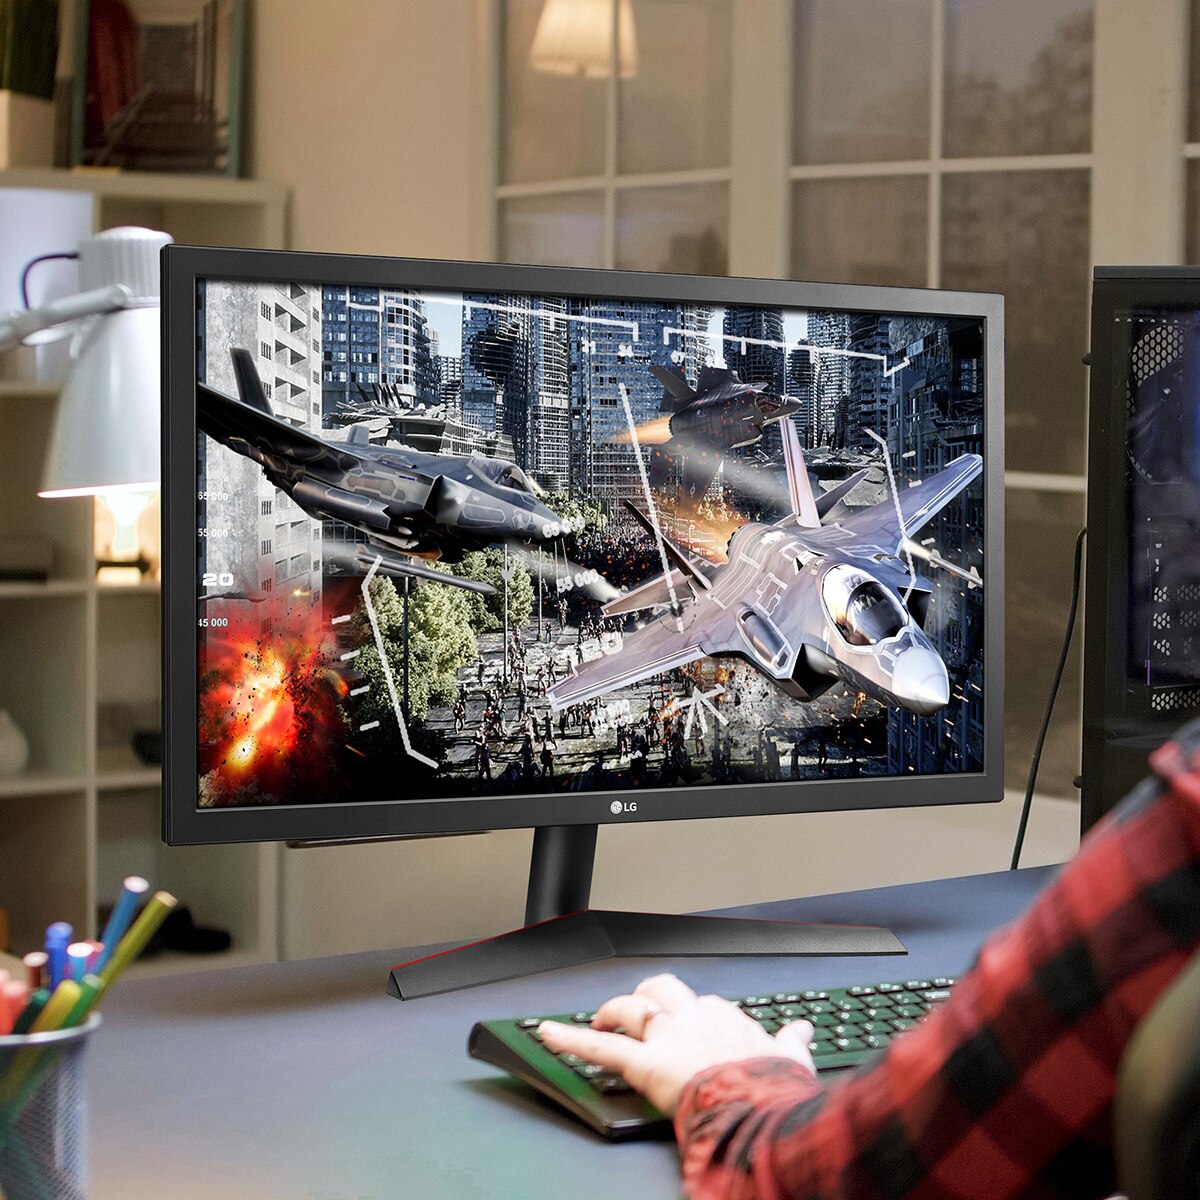 LG Monitor 23.5" para Gaming UltraGear Full HD con AMD FreeSync™